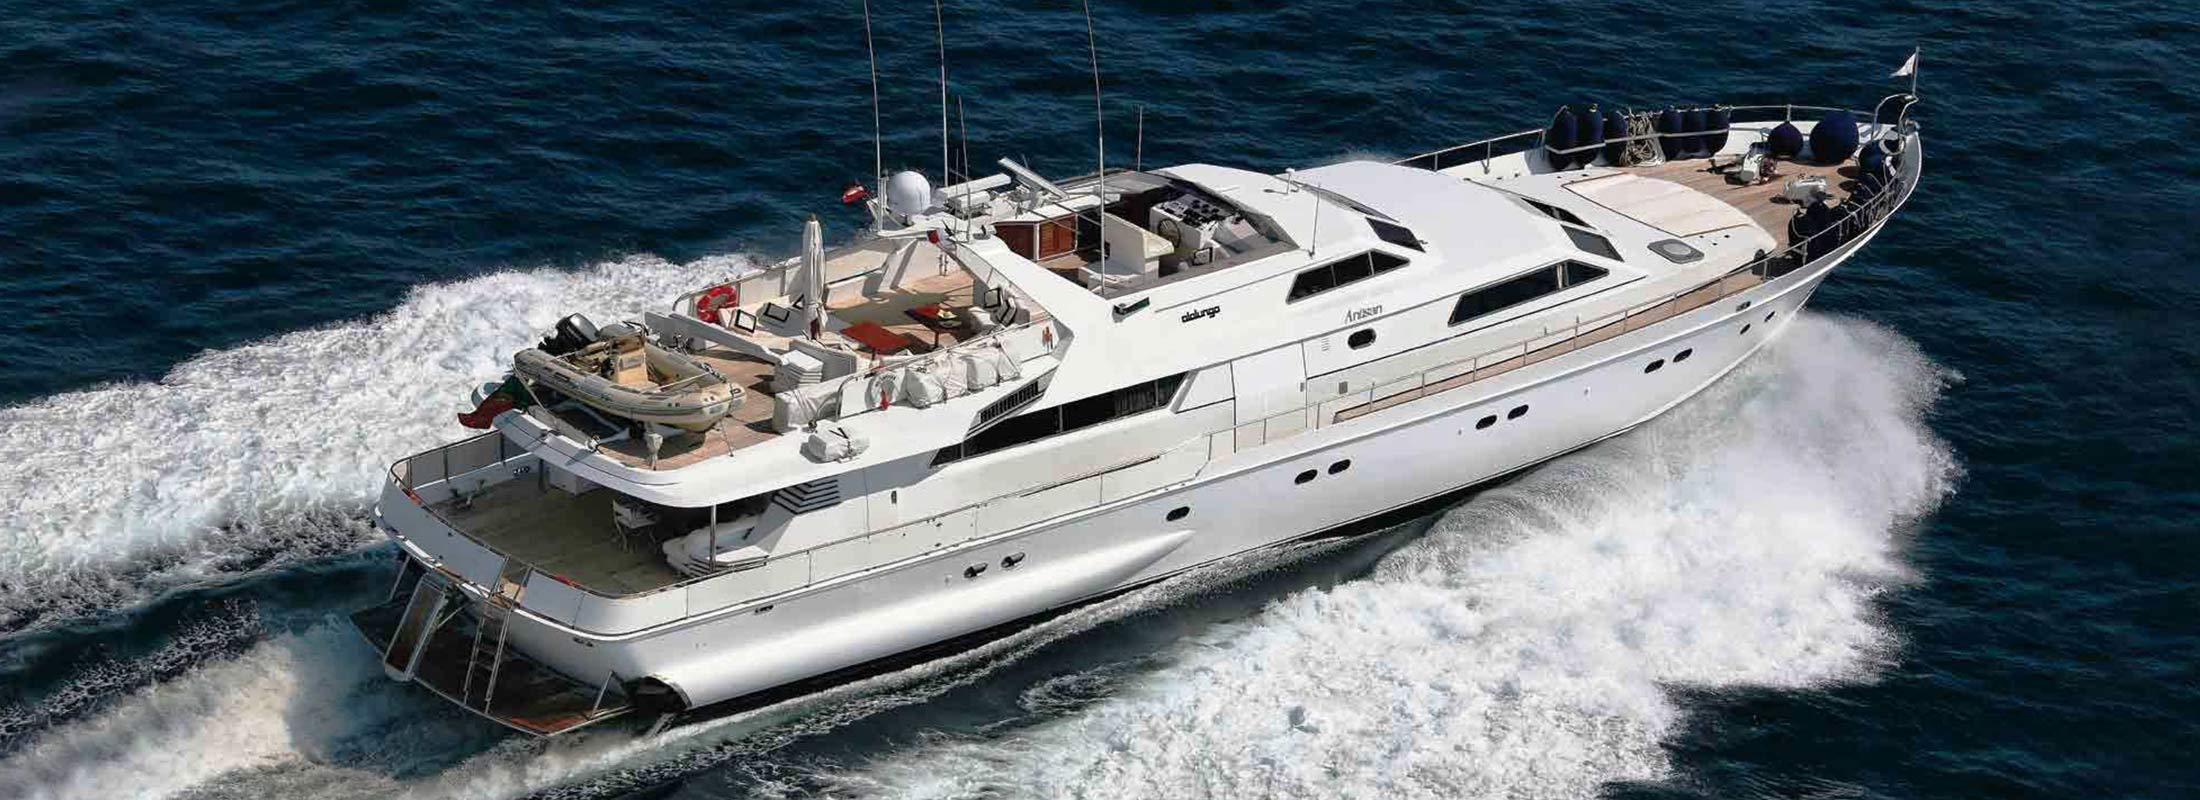 Antisan Motor Yacht for Charter Mediterranean slider 2